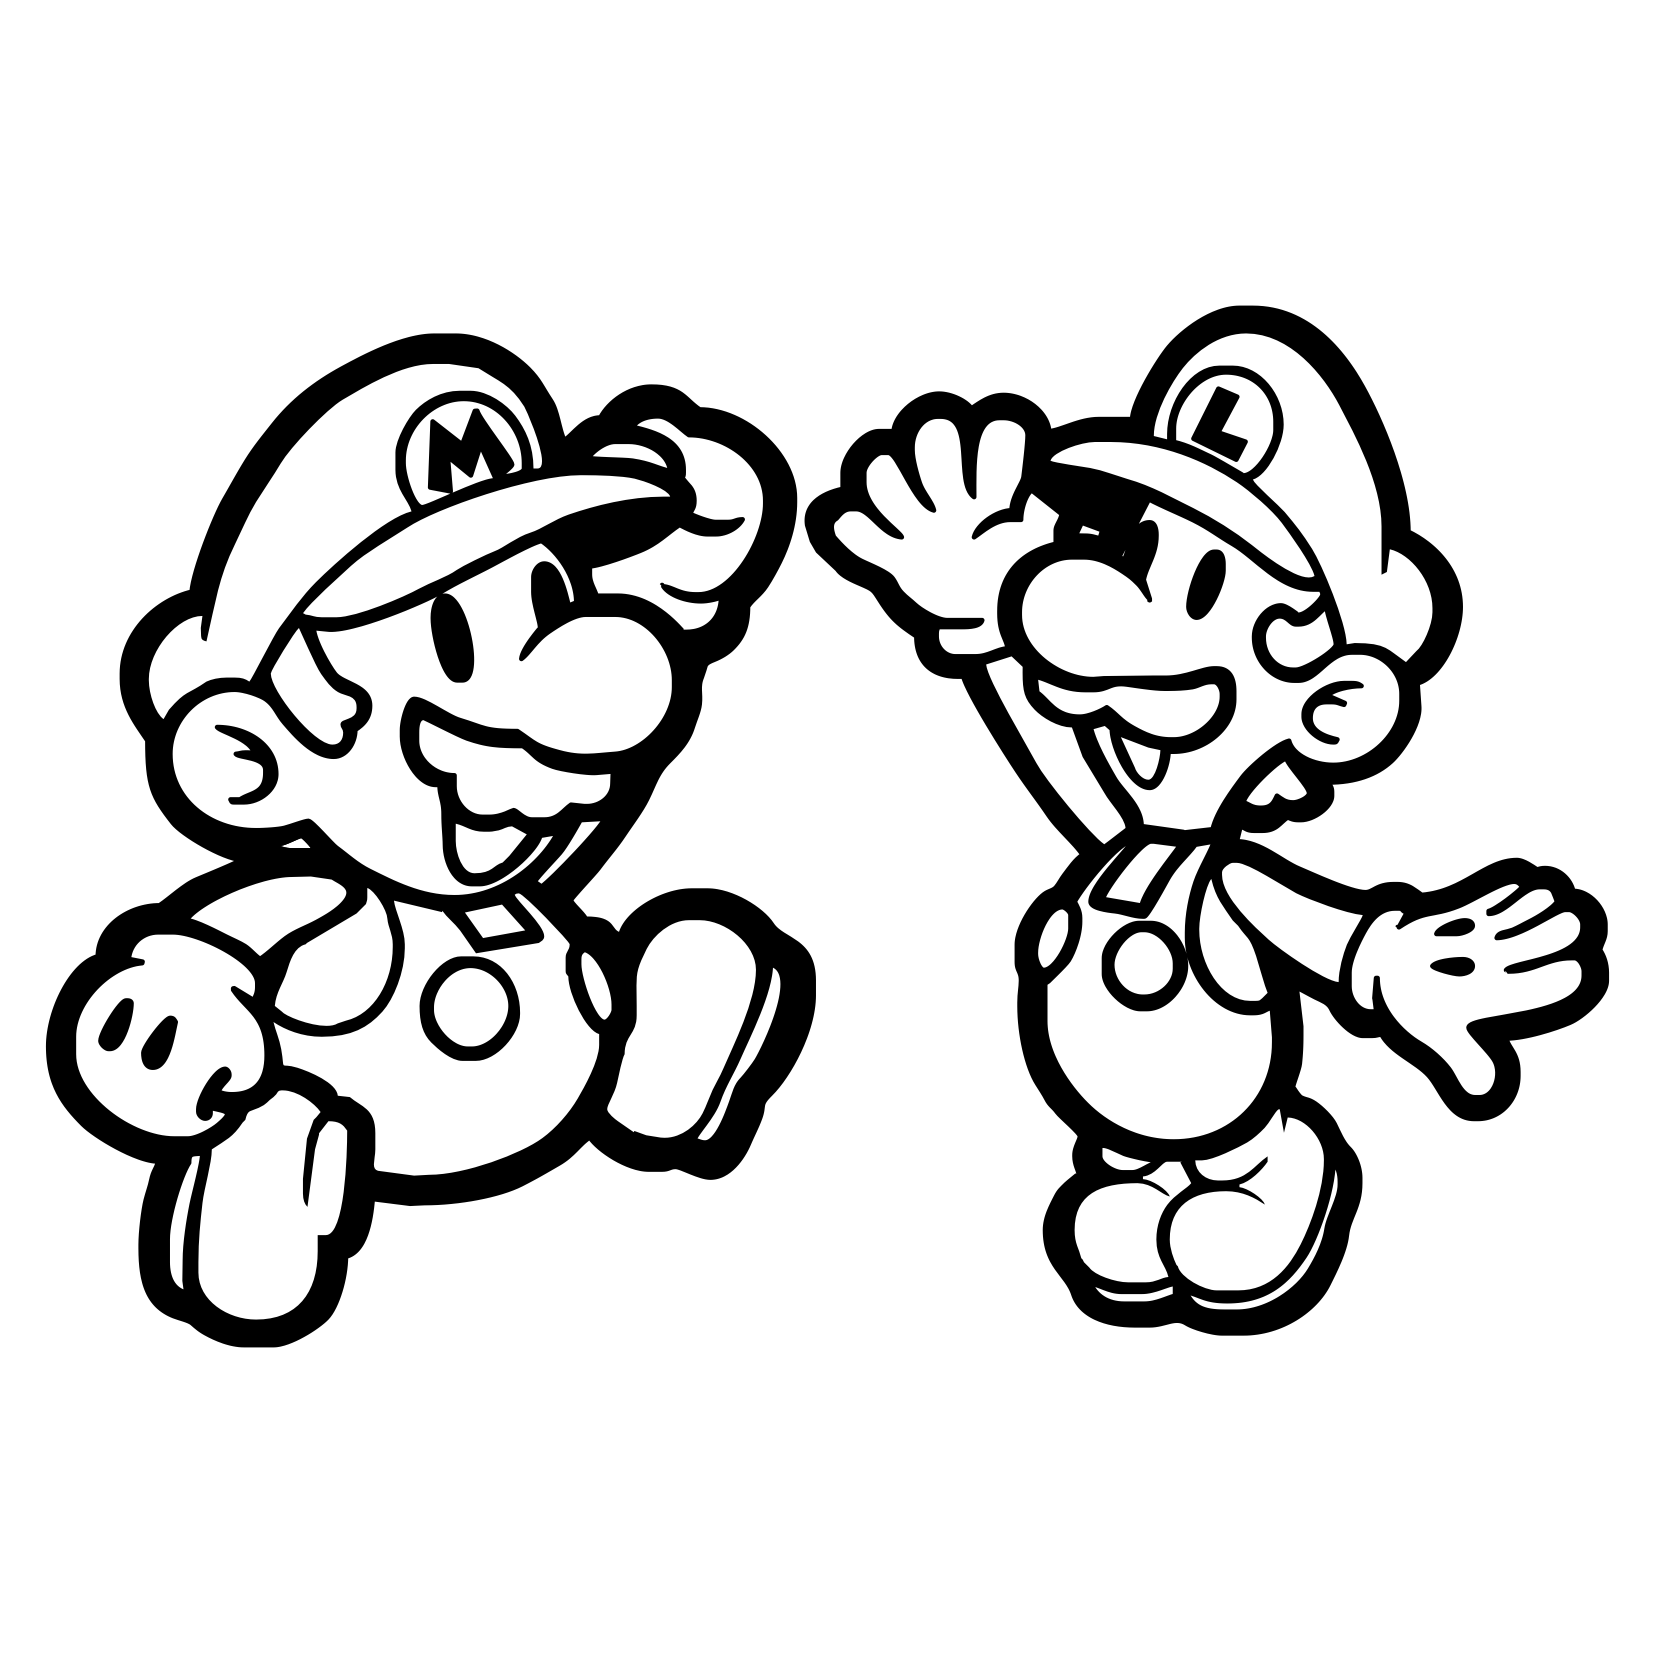 Mario and Luigi   Mario Bros Kids Coloring Pages